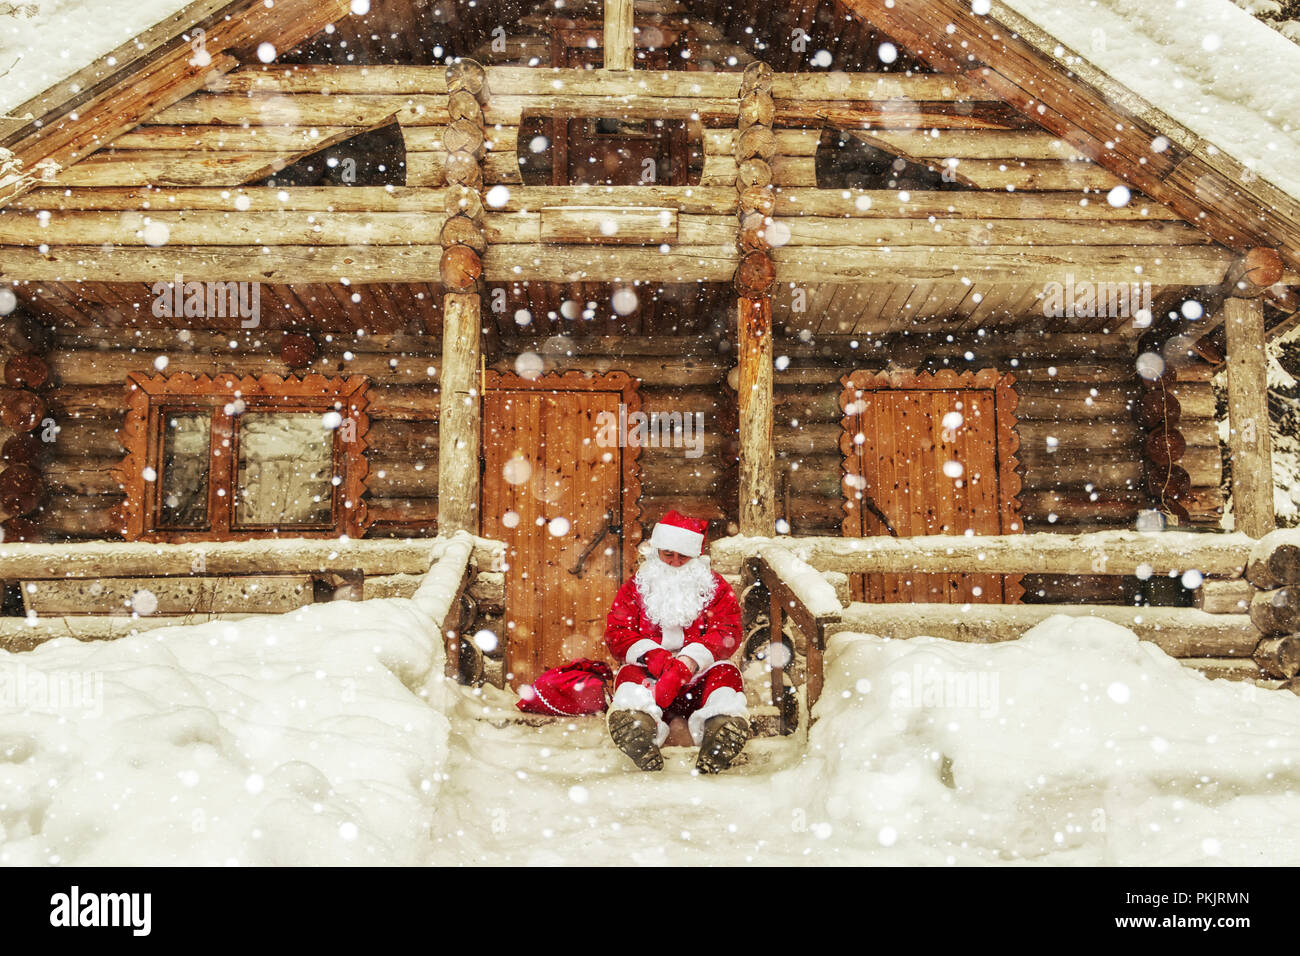 Casa Babbo Natale Polo Nord.La Vita Quotidiana Di Santa Claus Casa Di Babbo Natale Al Polo Nord Foto Stock Alamy